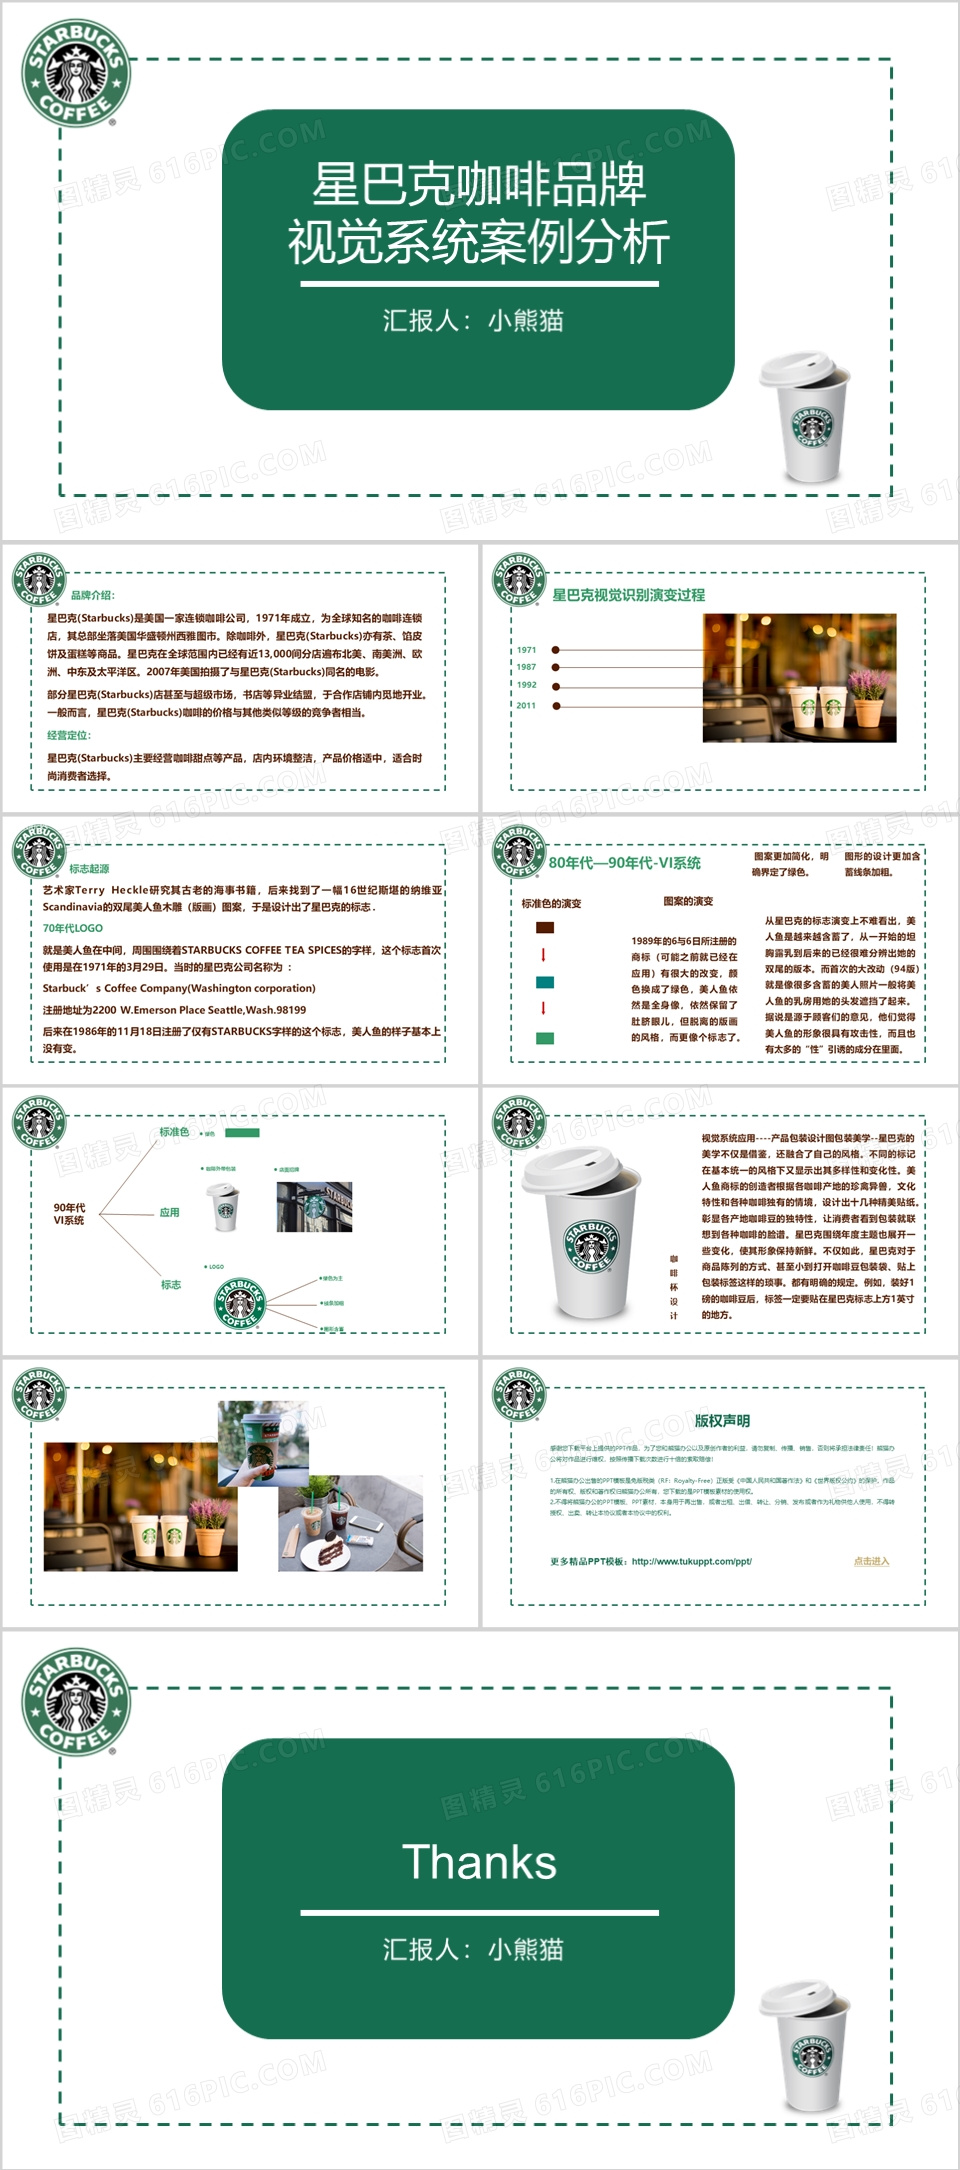 星巴克咖啡品牌视觉系统案例分析PPT模板